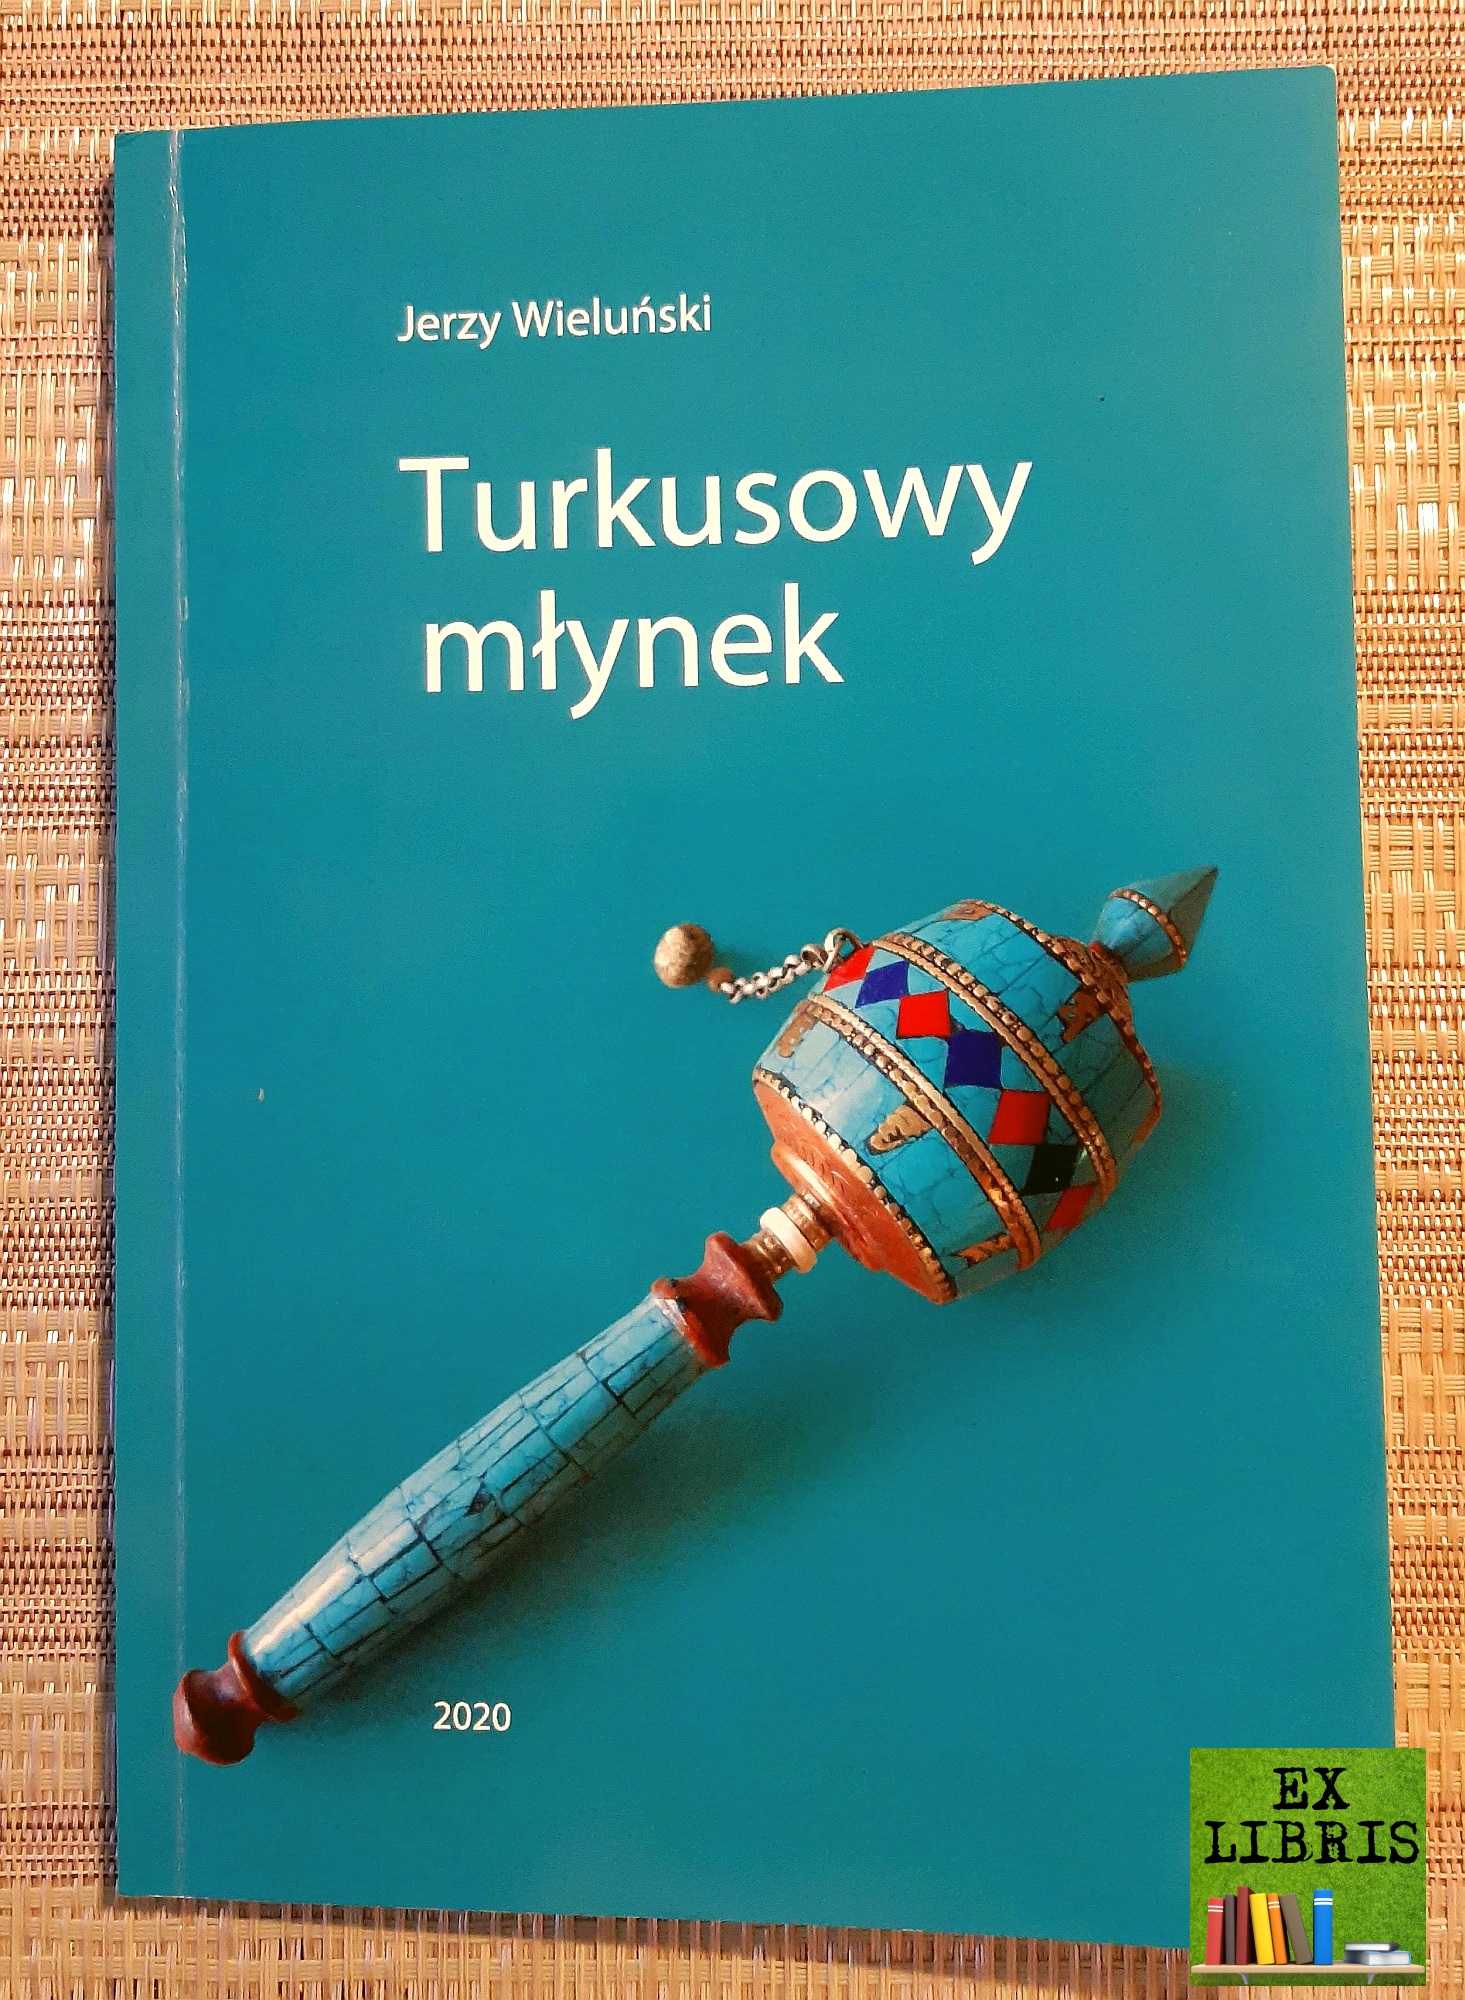 Jerzy Wieluński: Turkusowy młynek, Bydgoszcz 2020, 113 s., il.